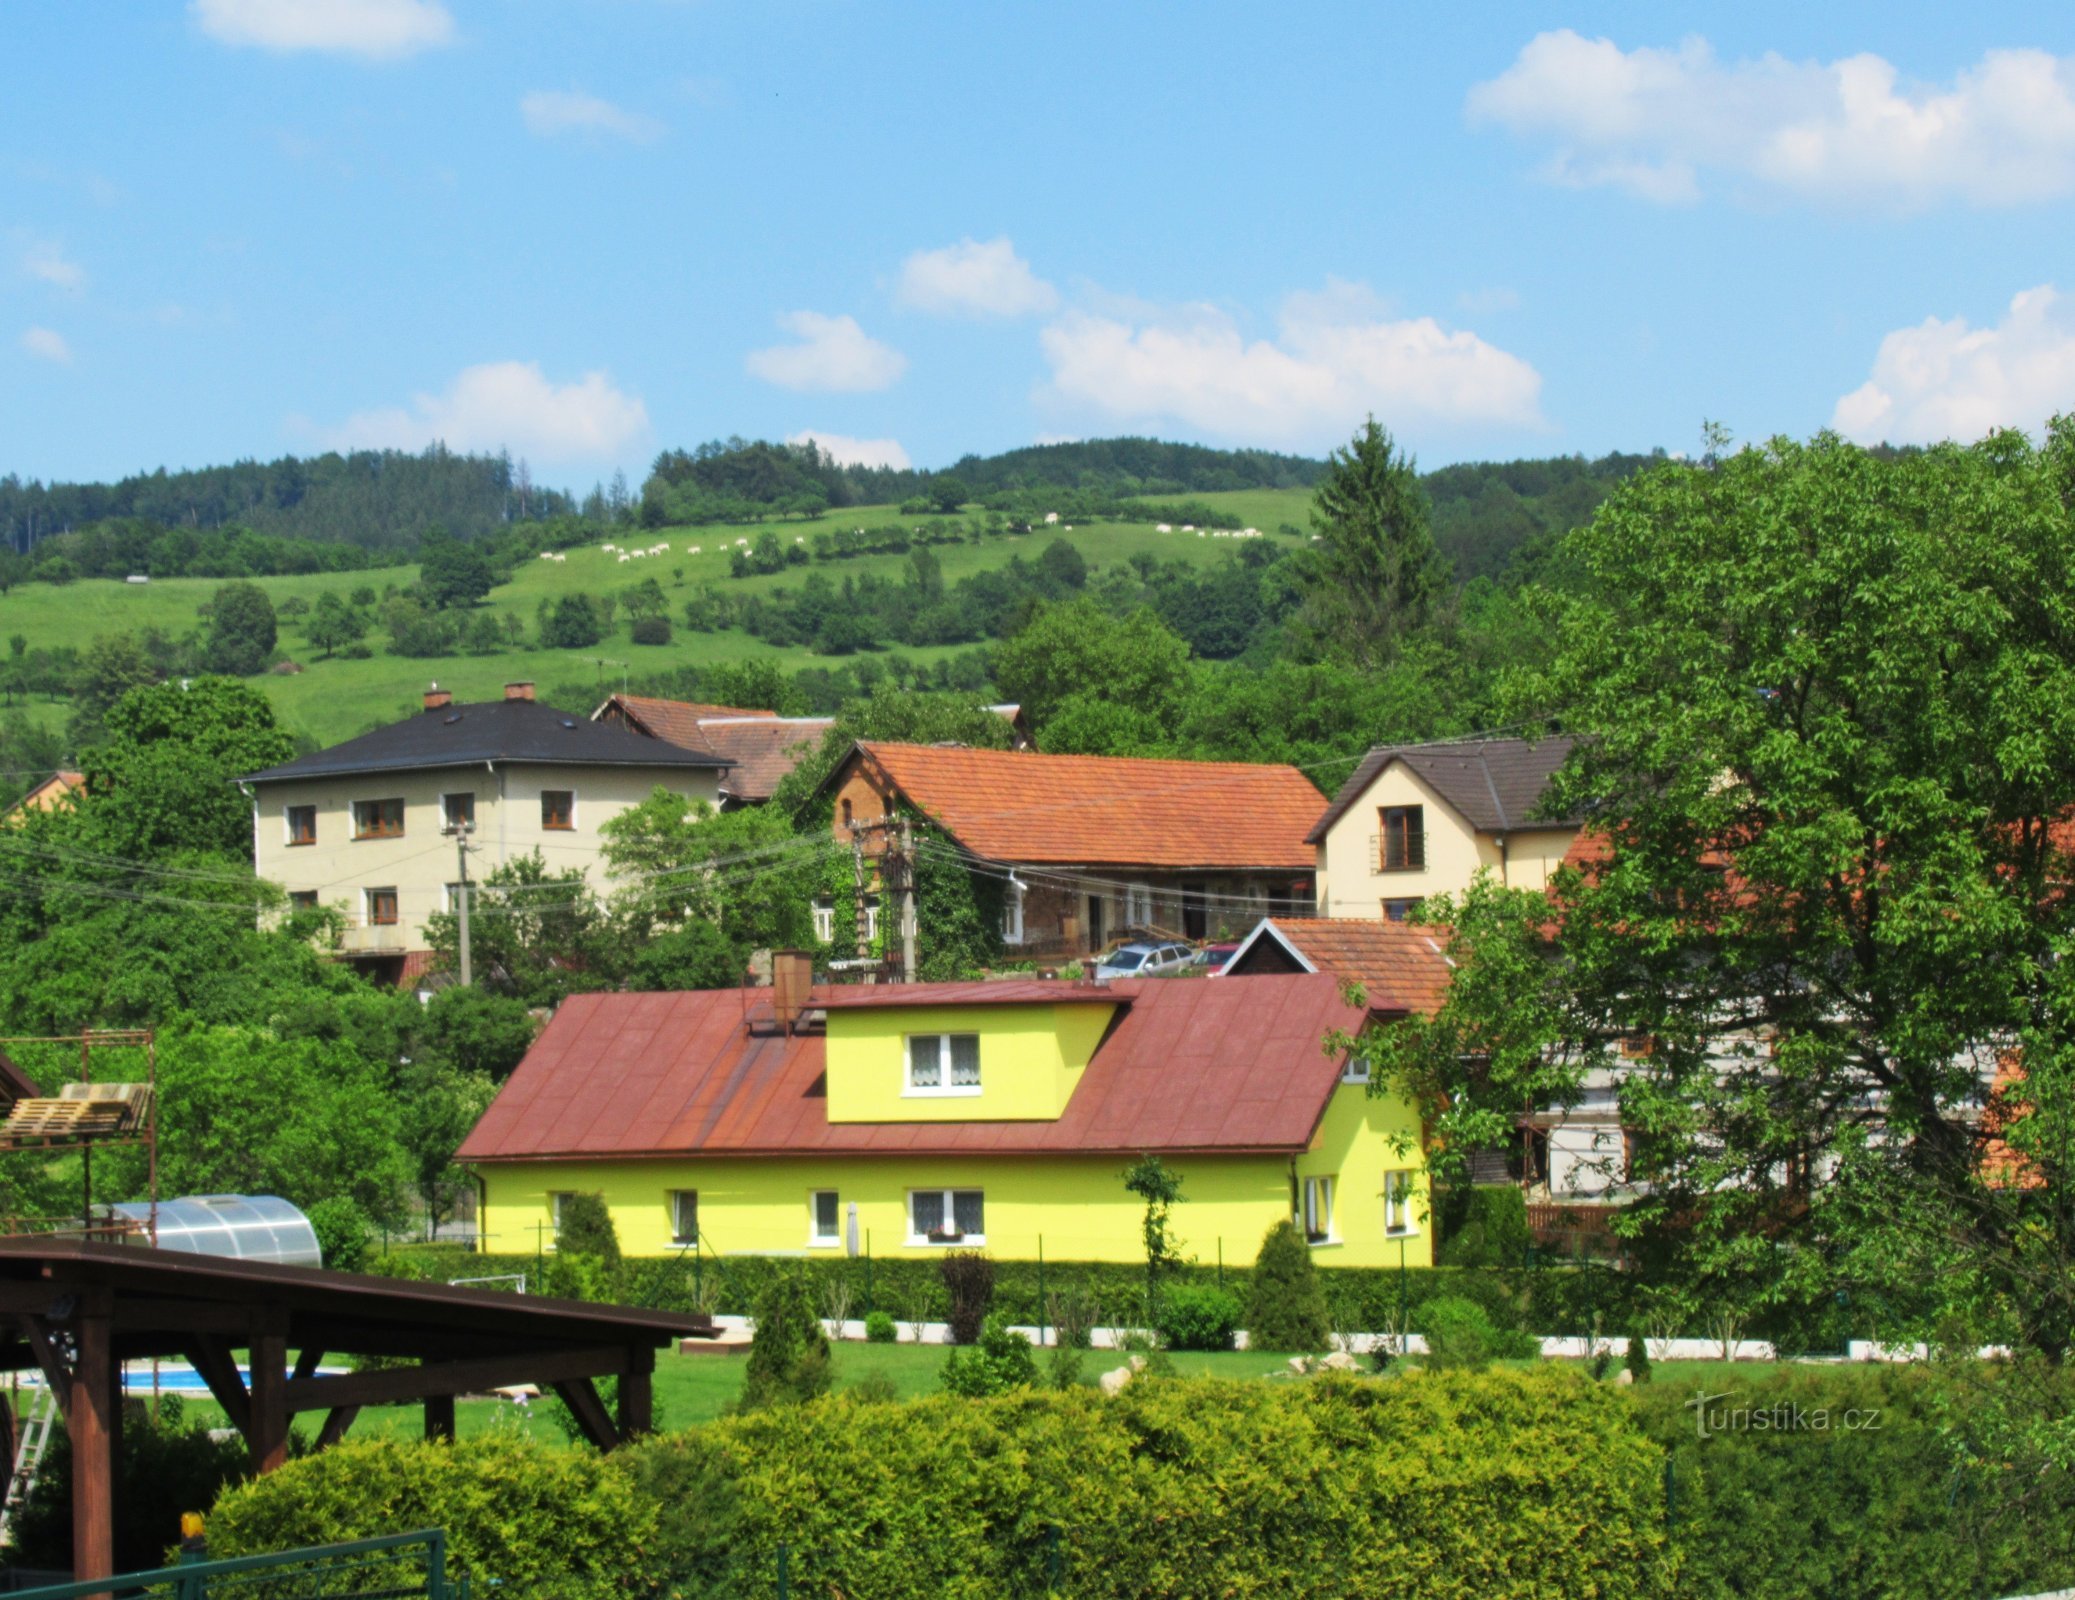 Balades printanières dans le village de Jasennau au pied des collines